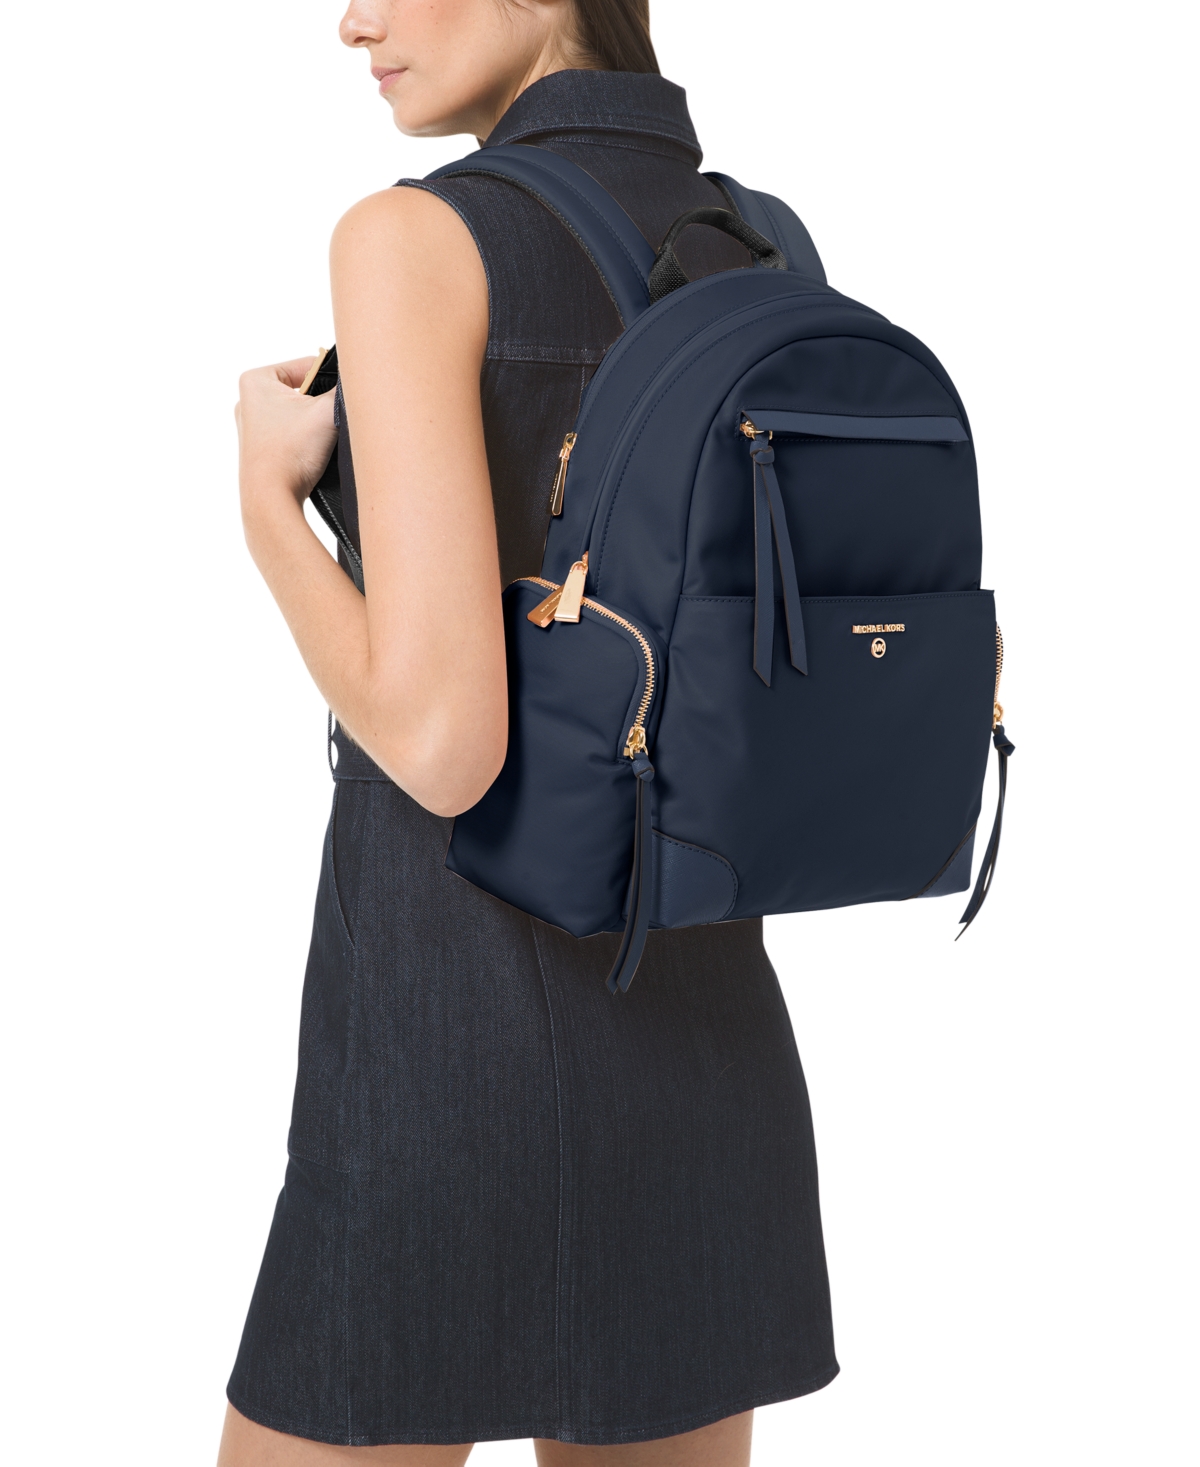 Michael Kors Ladies Prescott Large Nylon Backpack In N/a